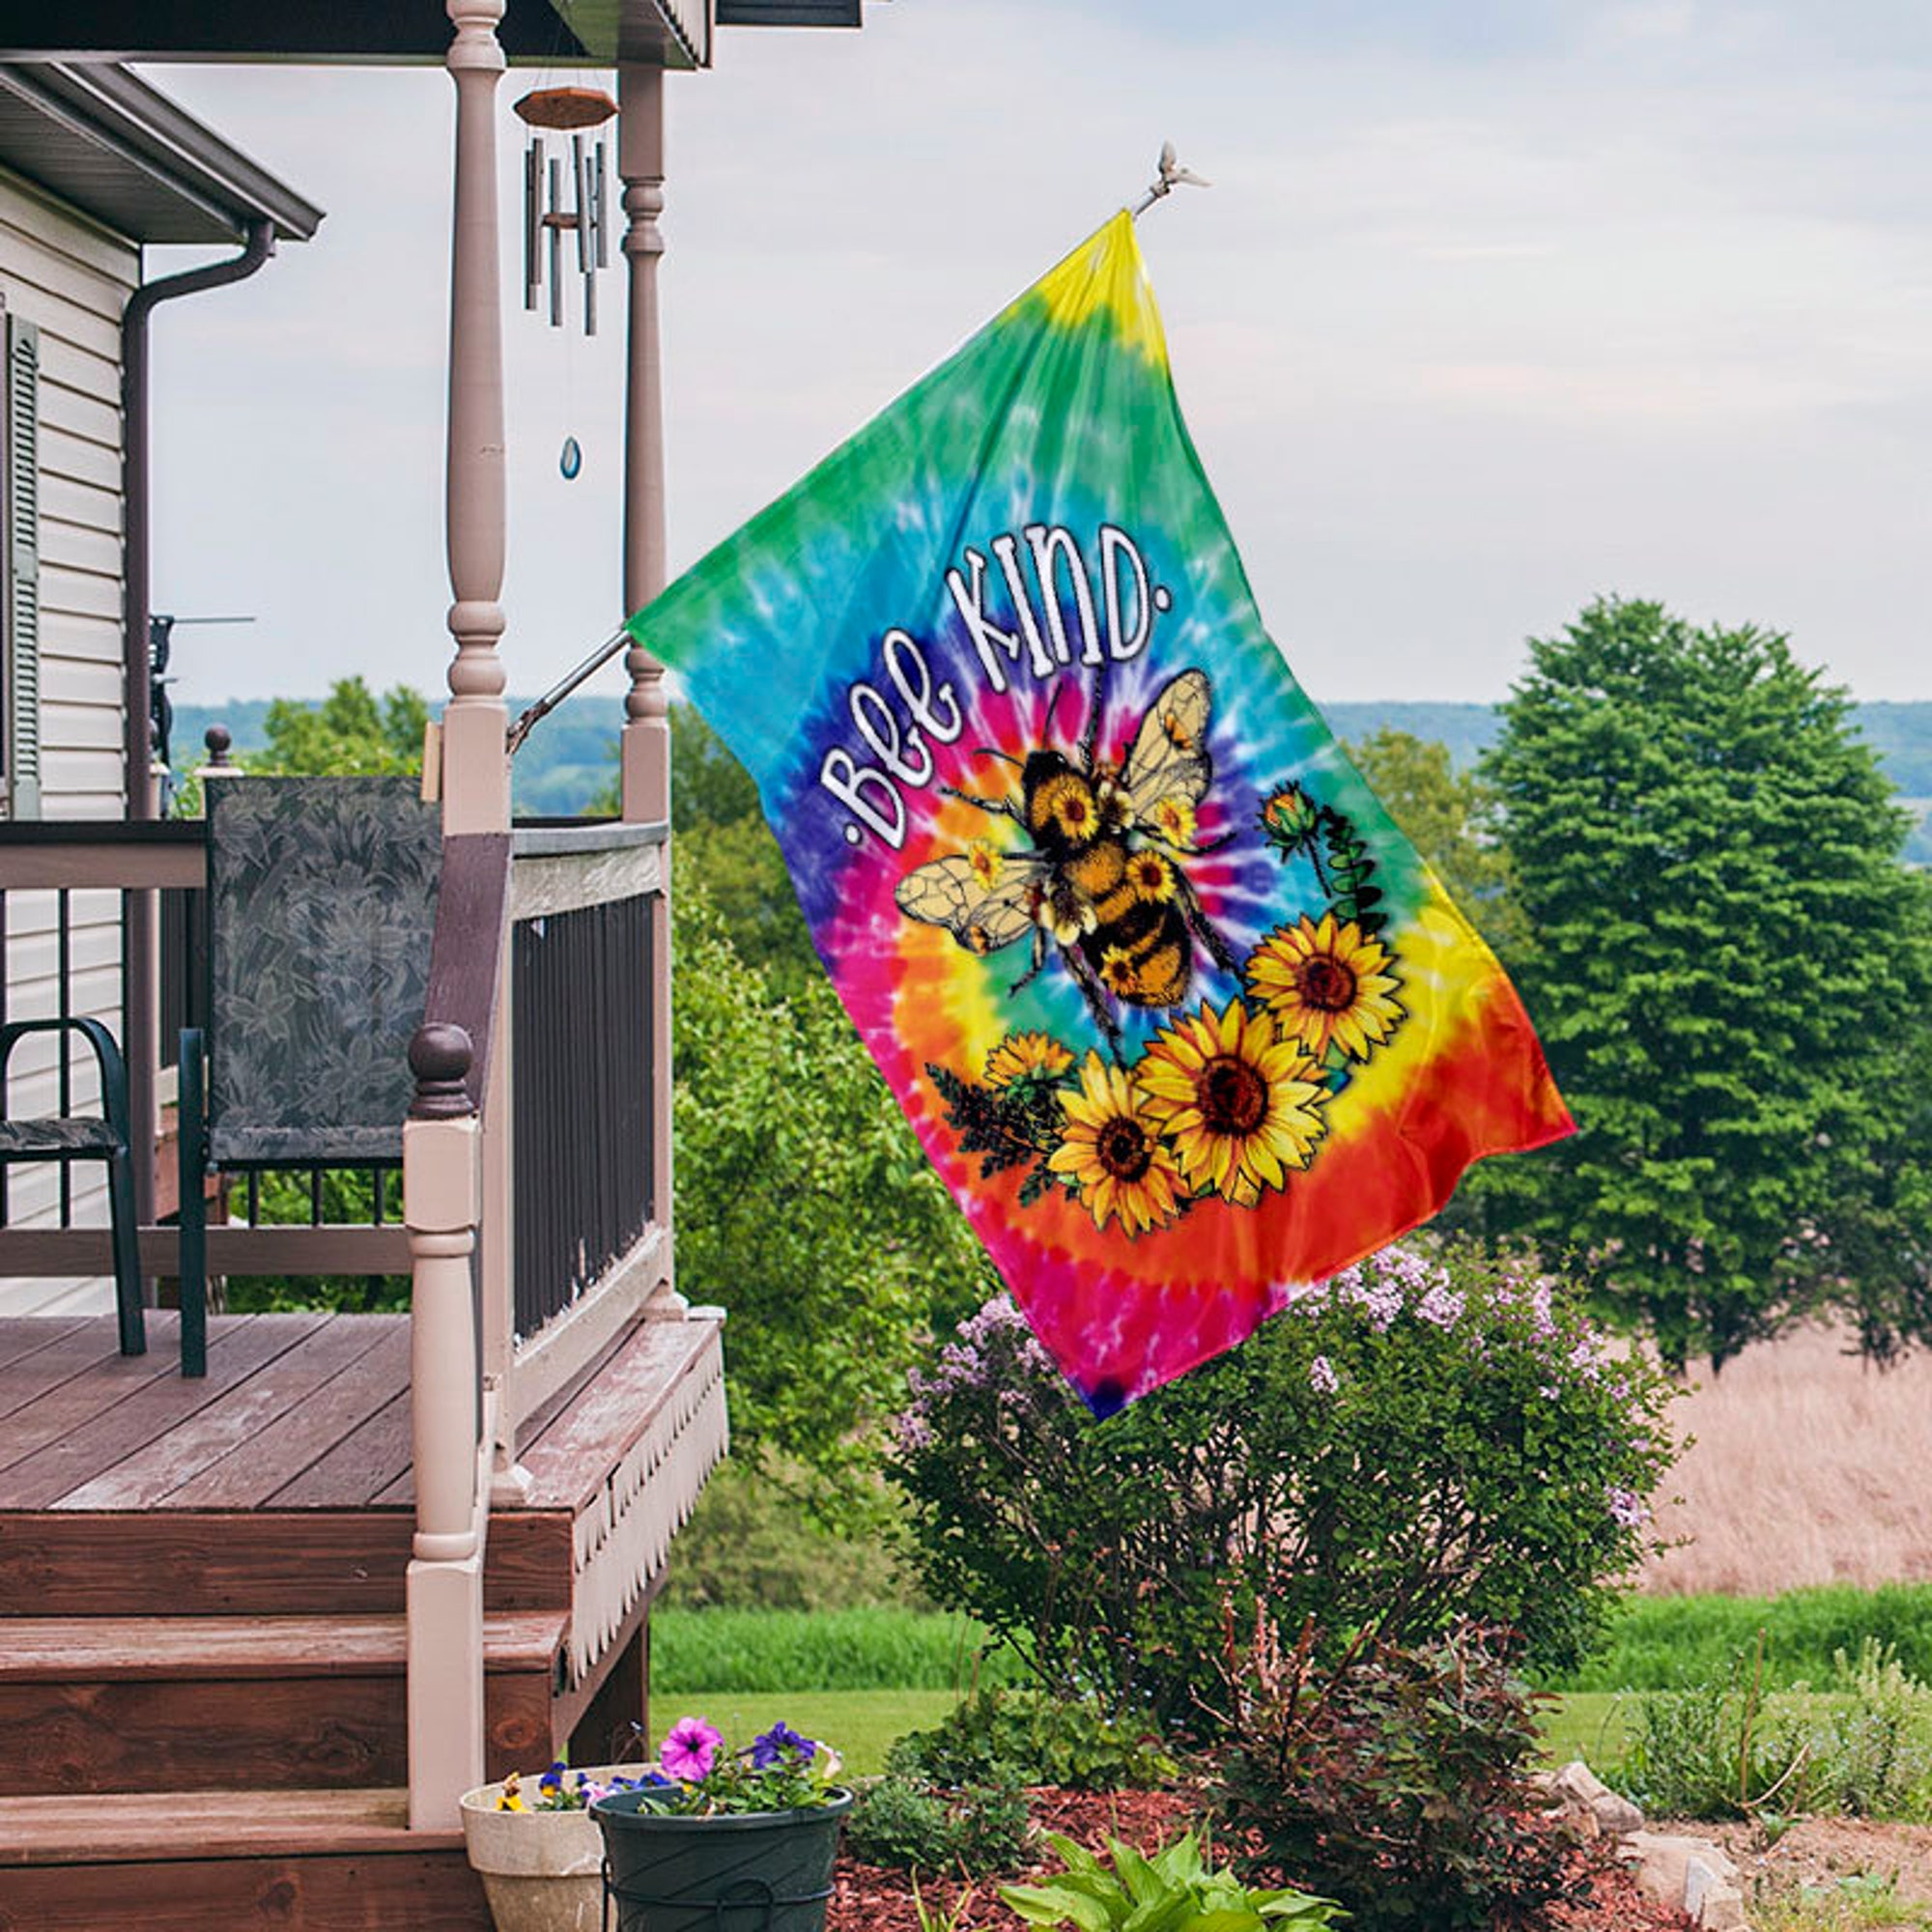 Discover Hippie Soul Flag, Hippie Bee Flag, Hippie Style Flag, Hippie Let It Be Flag, Hippie Soul House Flag, Be Kind Flag